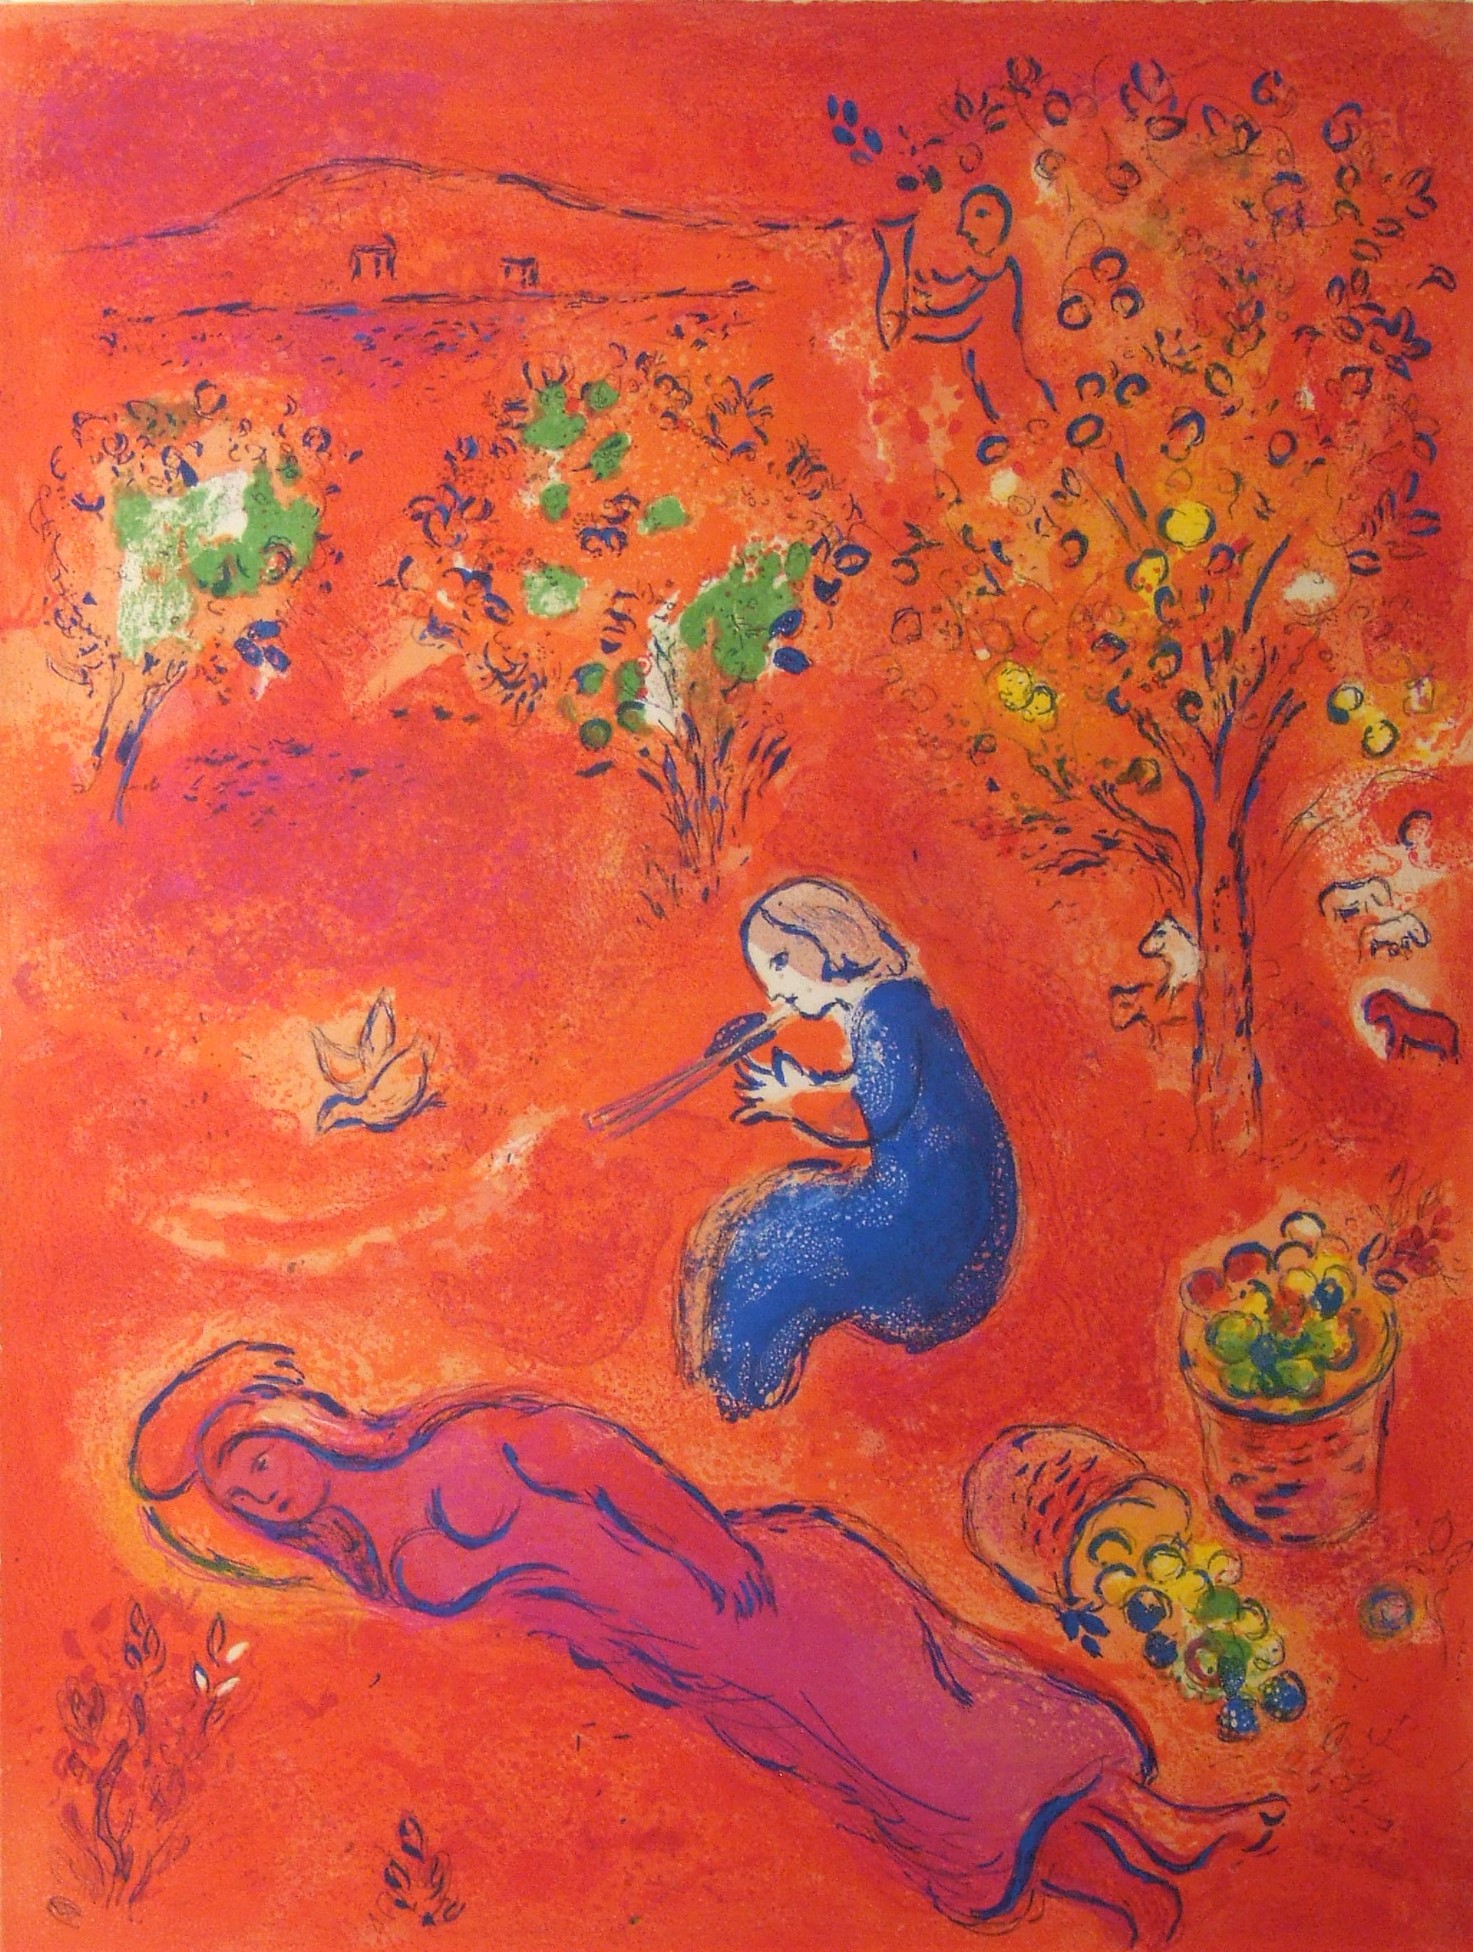  Chagall, Marc, Sommerliche Mittagspause, 1961, Mourlot 318, © VG Bild-Kunst, Bonn 2019 